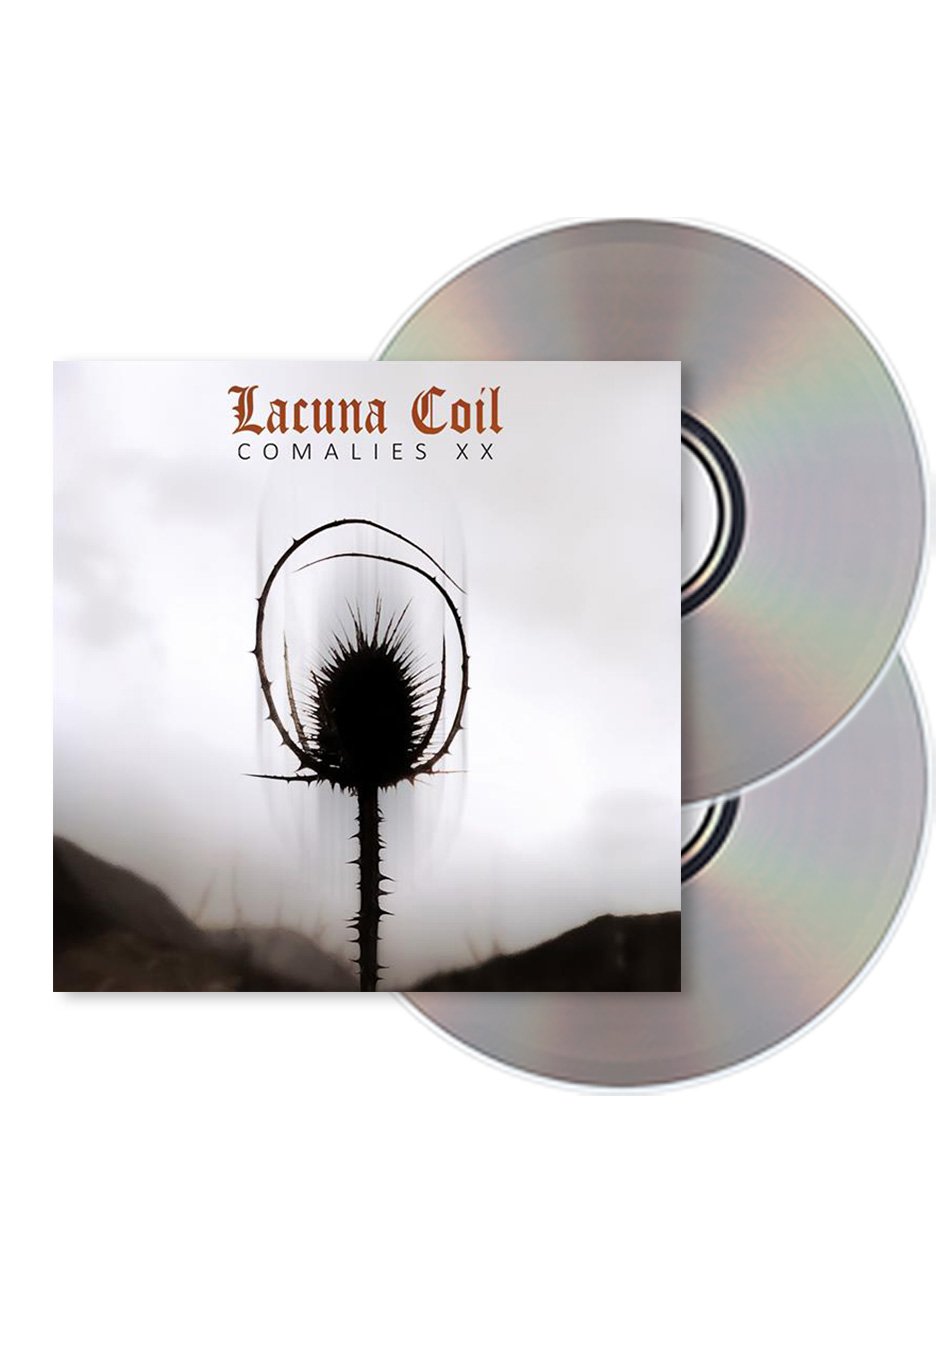 Lacuna Coil - Comalies XX Ltd. Deluxe - 2CD